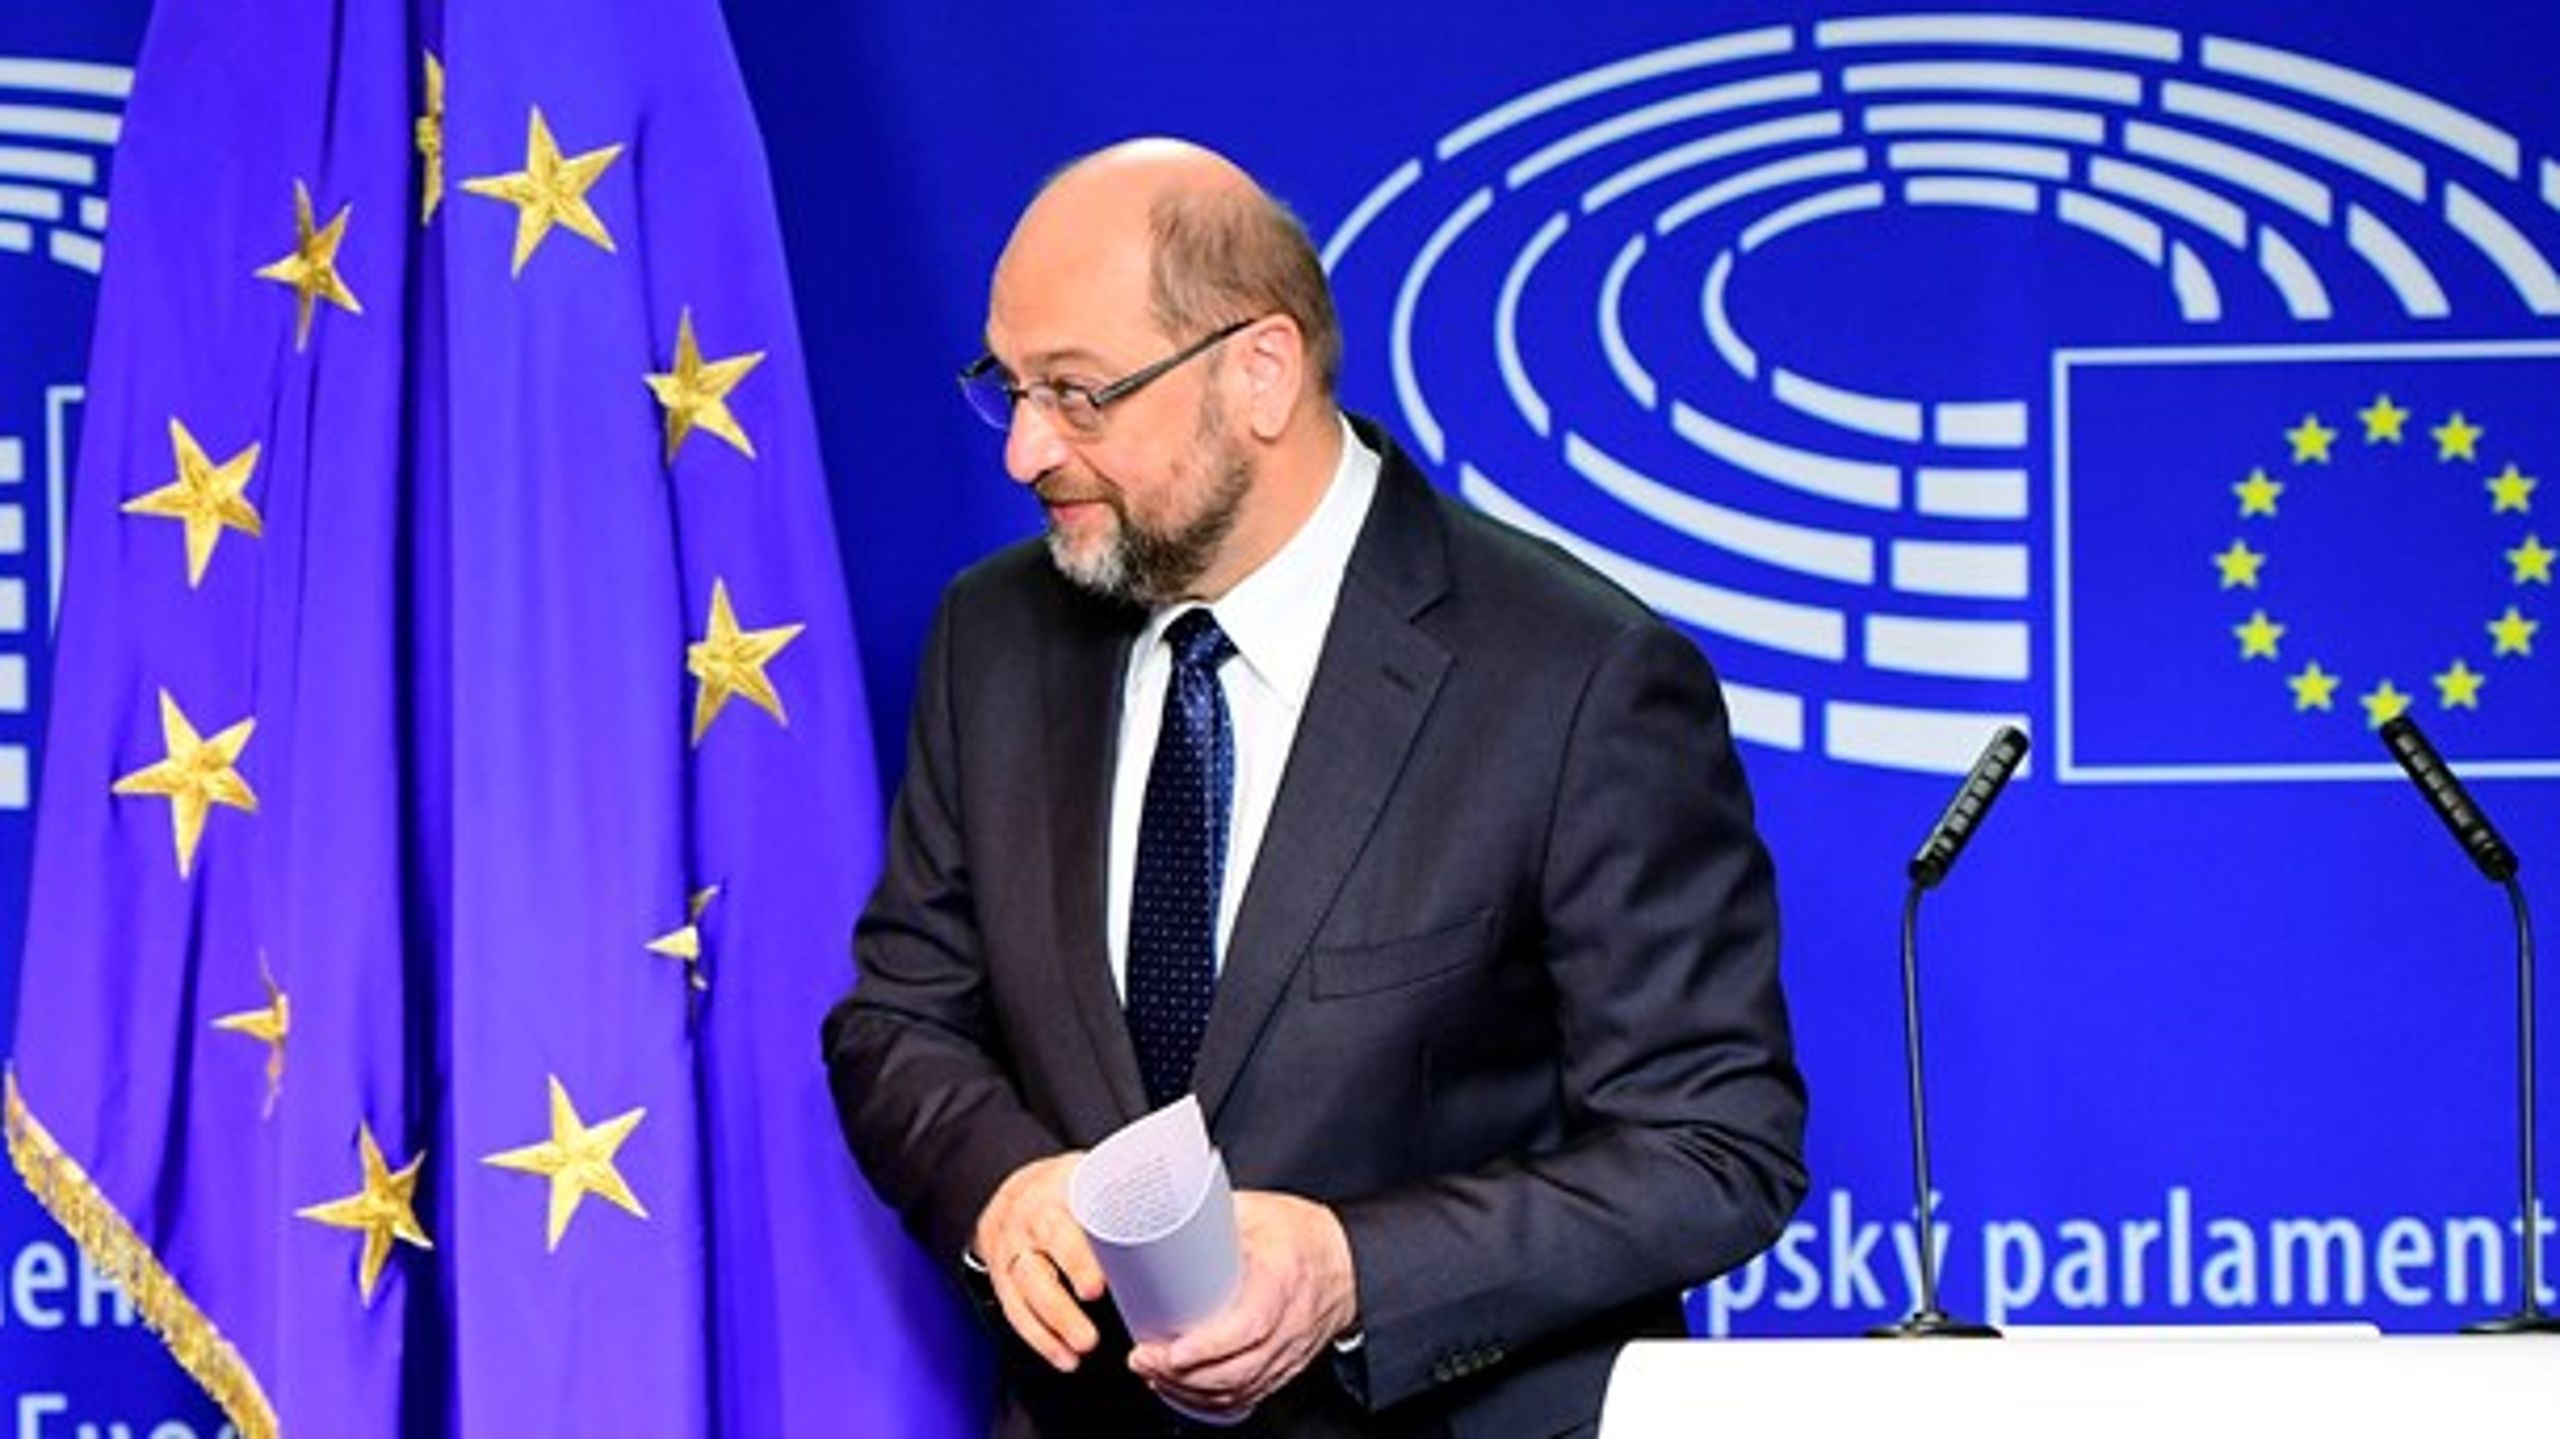 Torsdag satte Europa-Parlamentets formand Martin Schulz en stopper for spekulationerne om sin politiske fremtid. Den ligger i tysk politik.